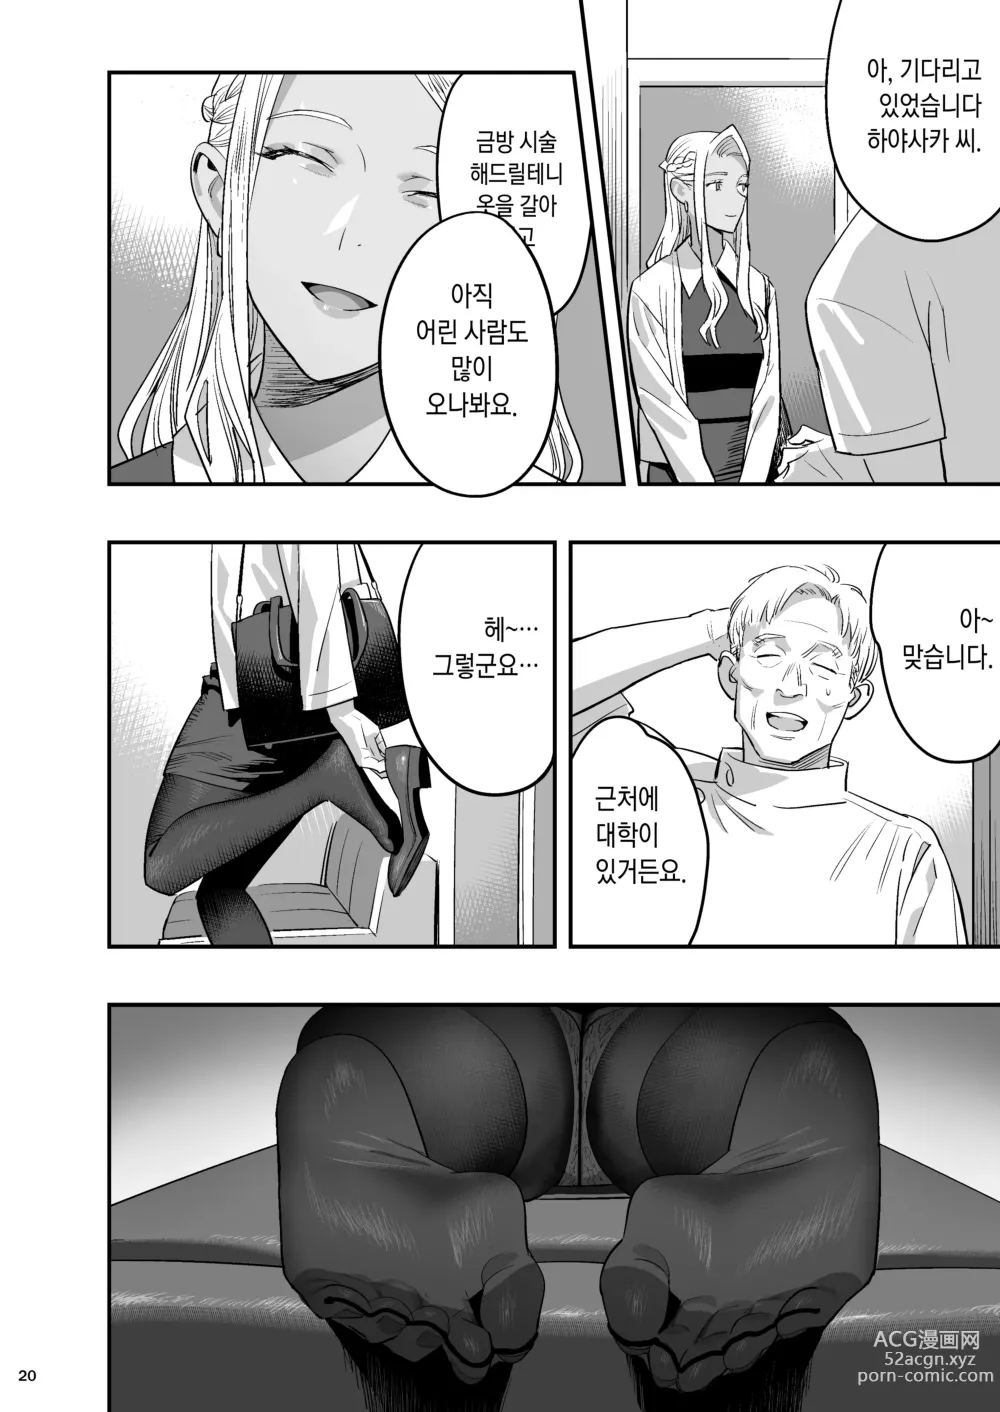 Page 17 of doujinshi 내가 먼저 좋아했는데 정체.